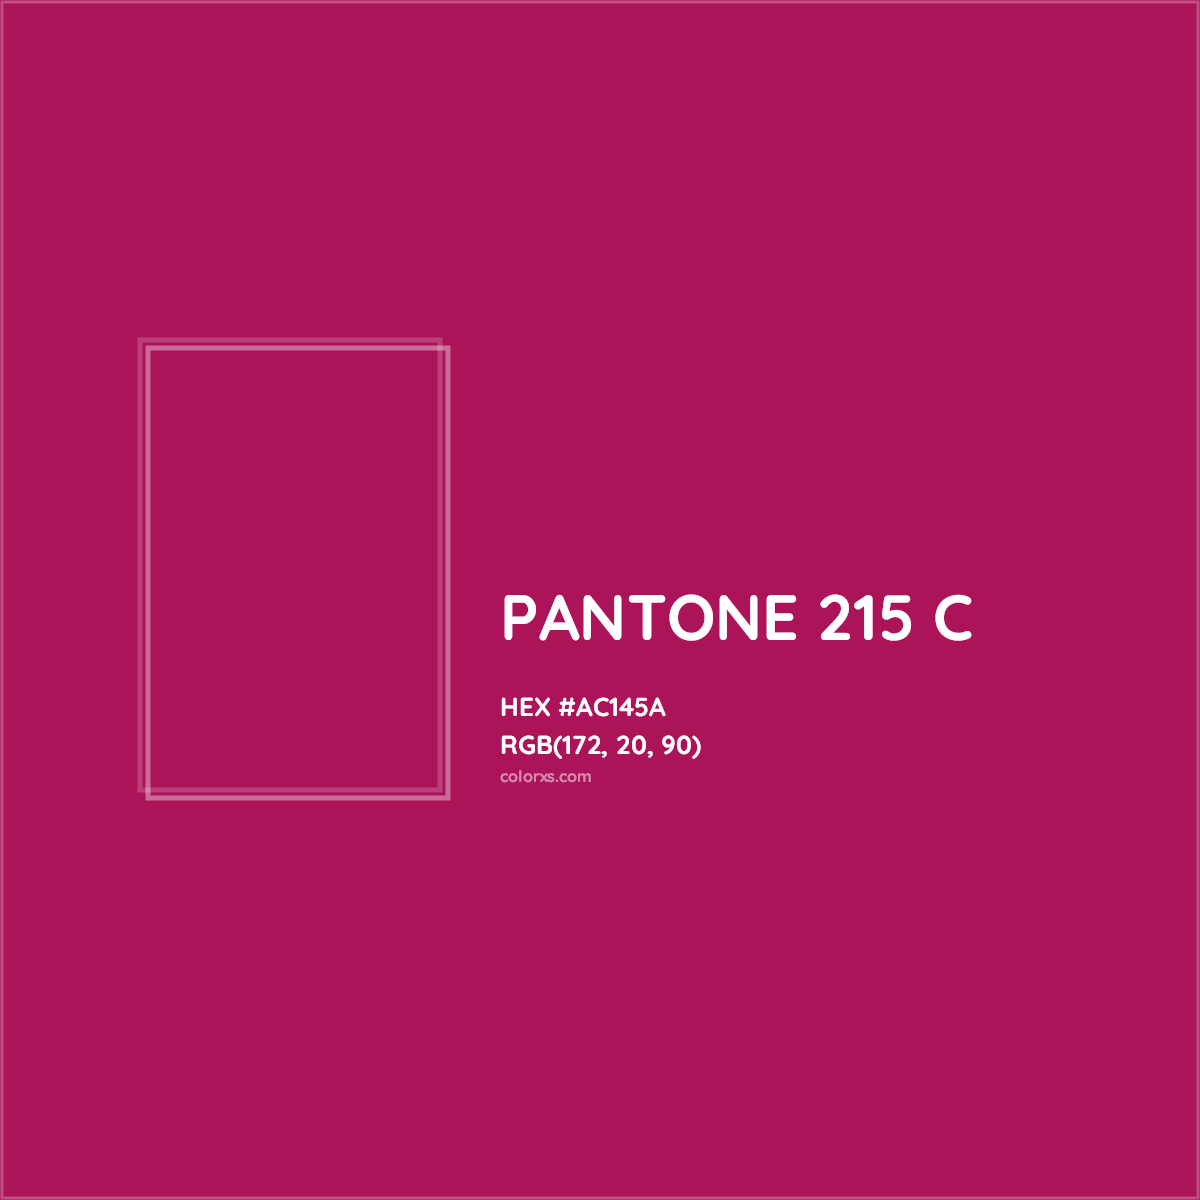 HEX #AC145A PANTONE 215 C CMS Pantone PMS - Color Code